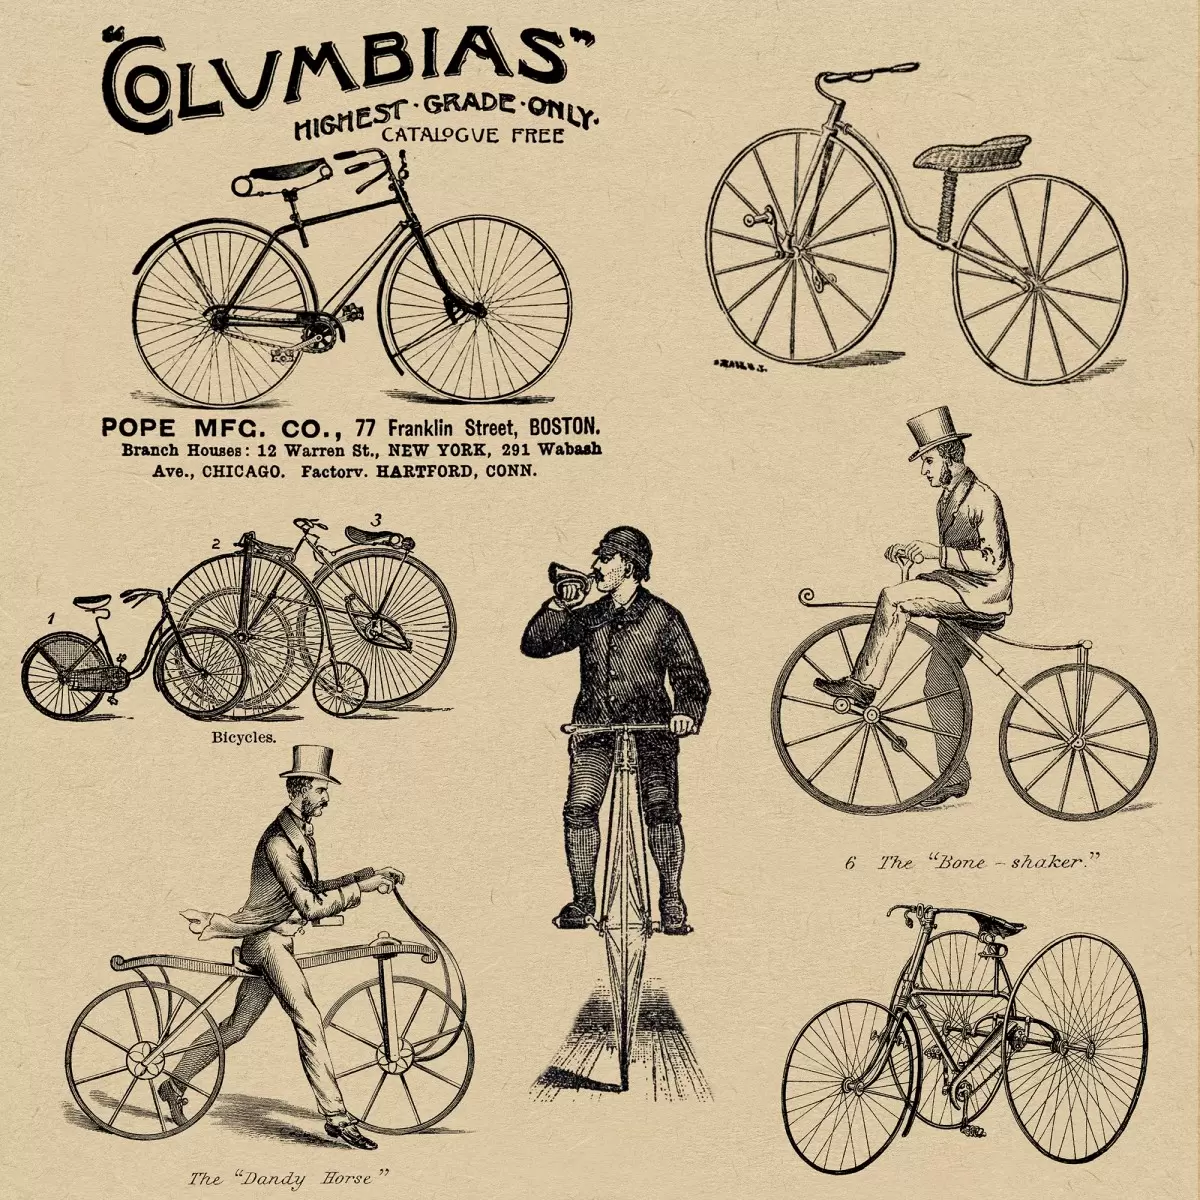 אופניים מפעם - Artpicked - תמונות וינטג' לסלון פוסטרים בסגנון וינטג'  - מק''ט: 329757